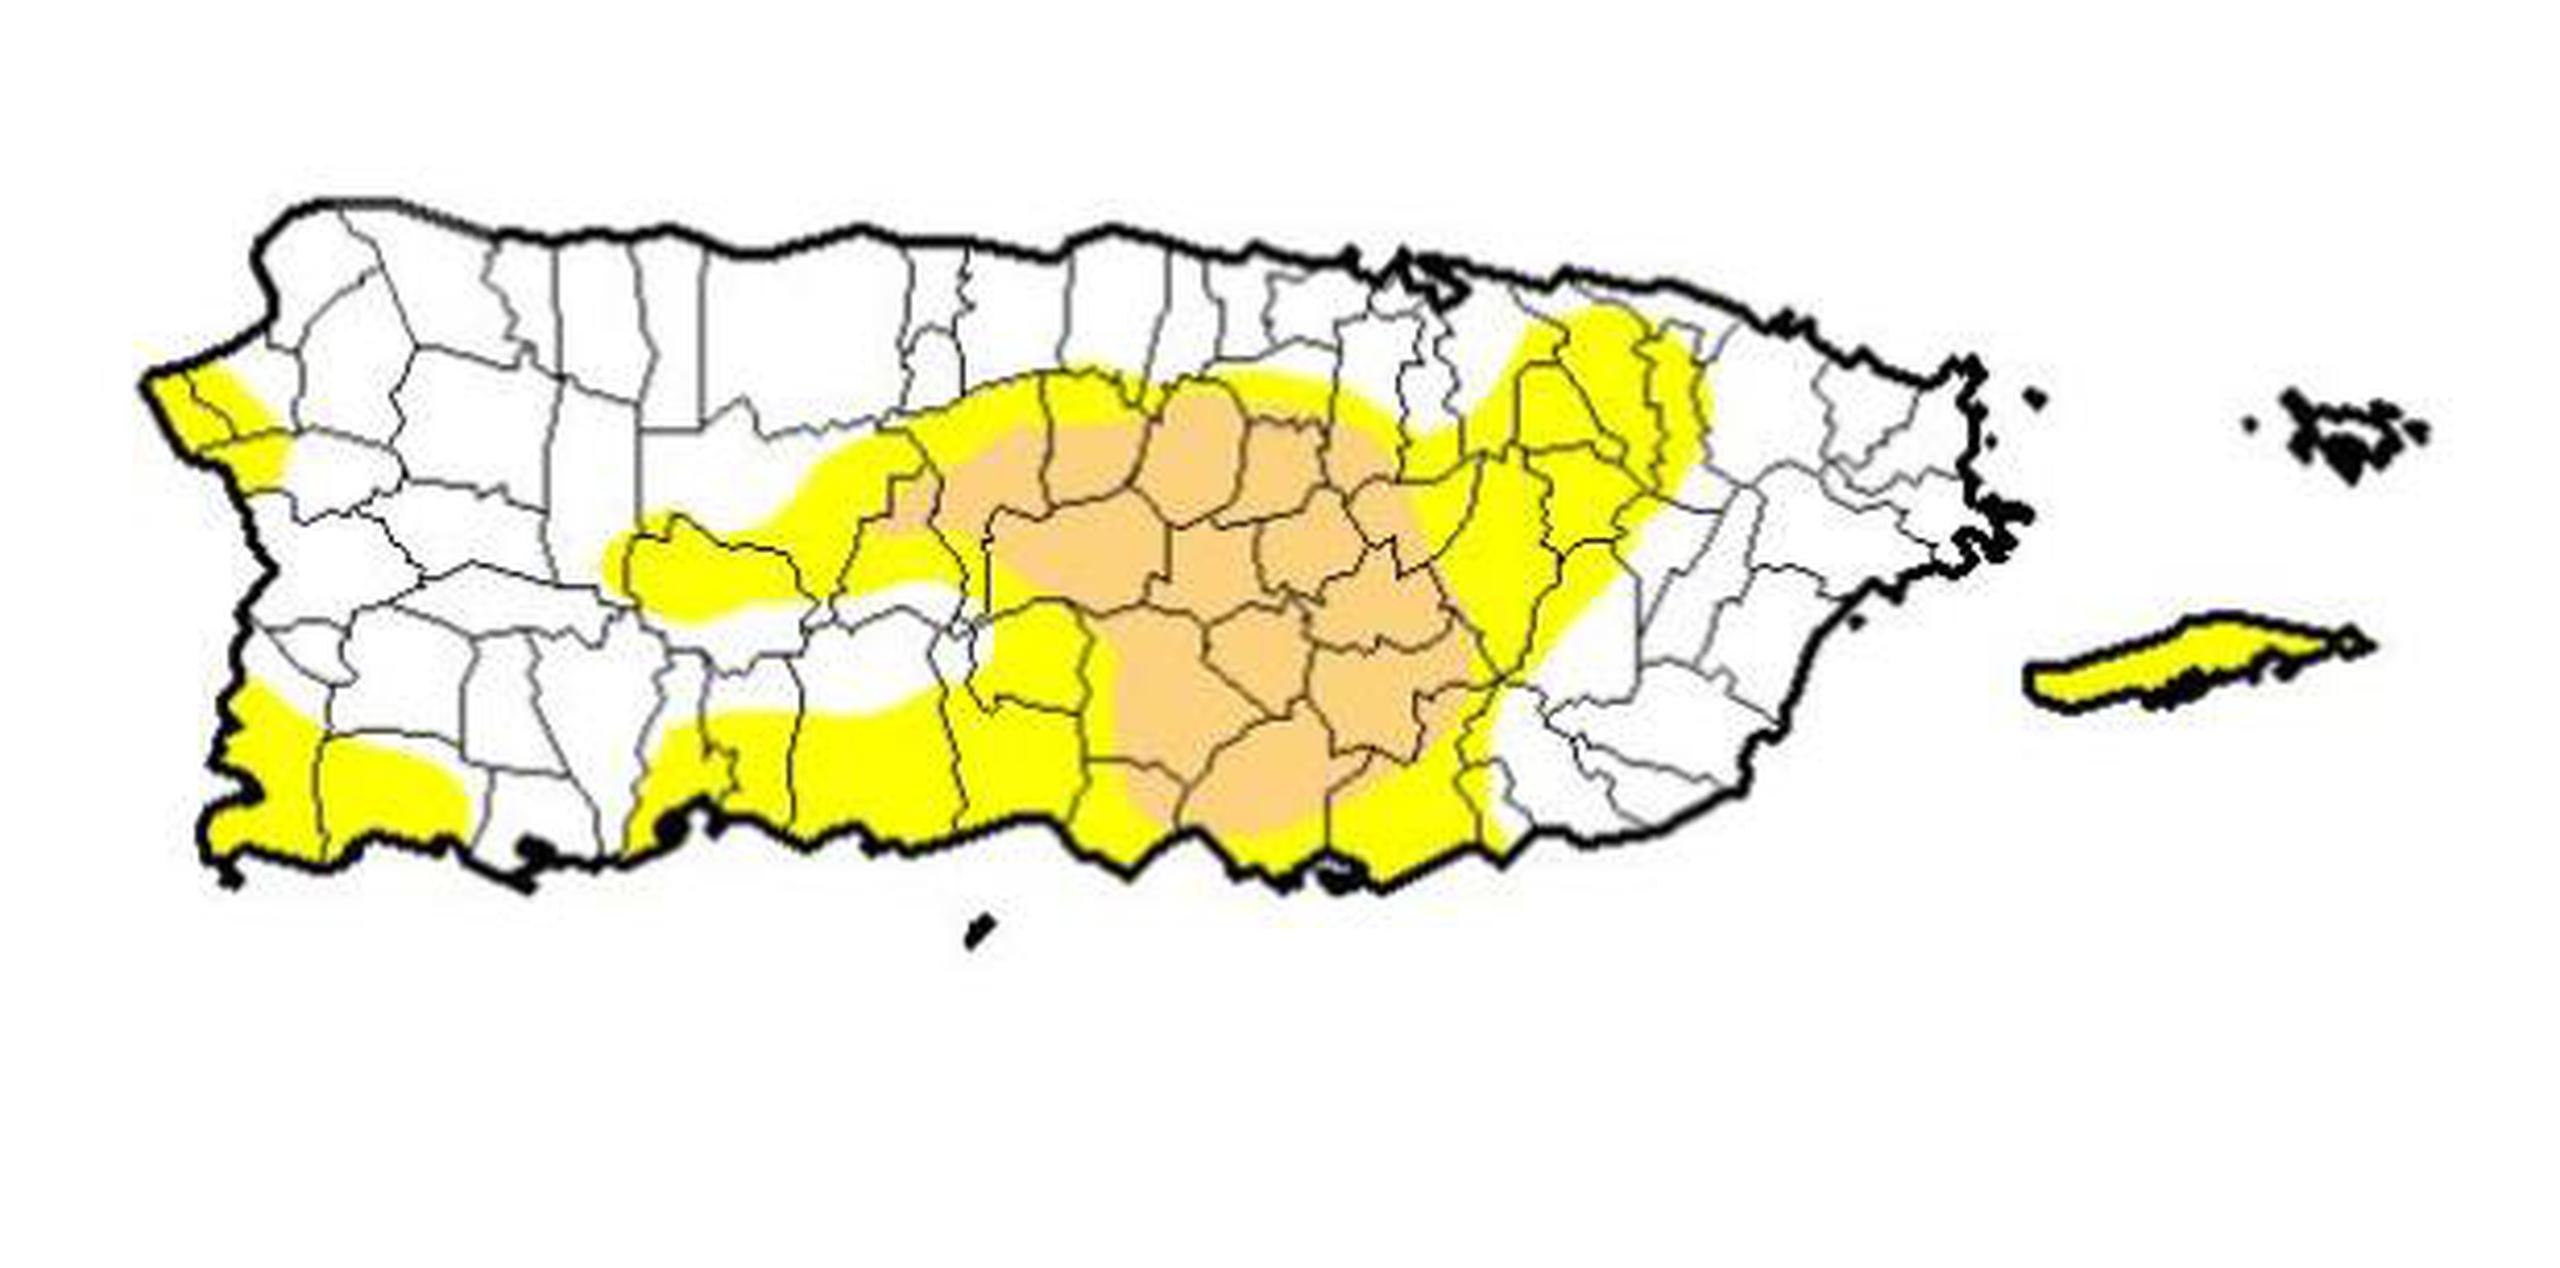 Las áreas en amarillo se encuentran en sequía atípica y la zona crema representa la sequía moderada. (Captura / Monitor de Sequía)